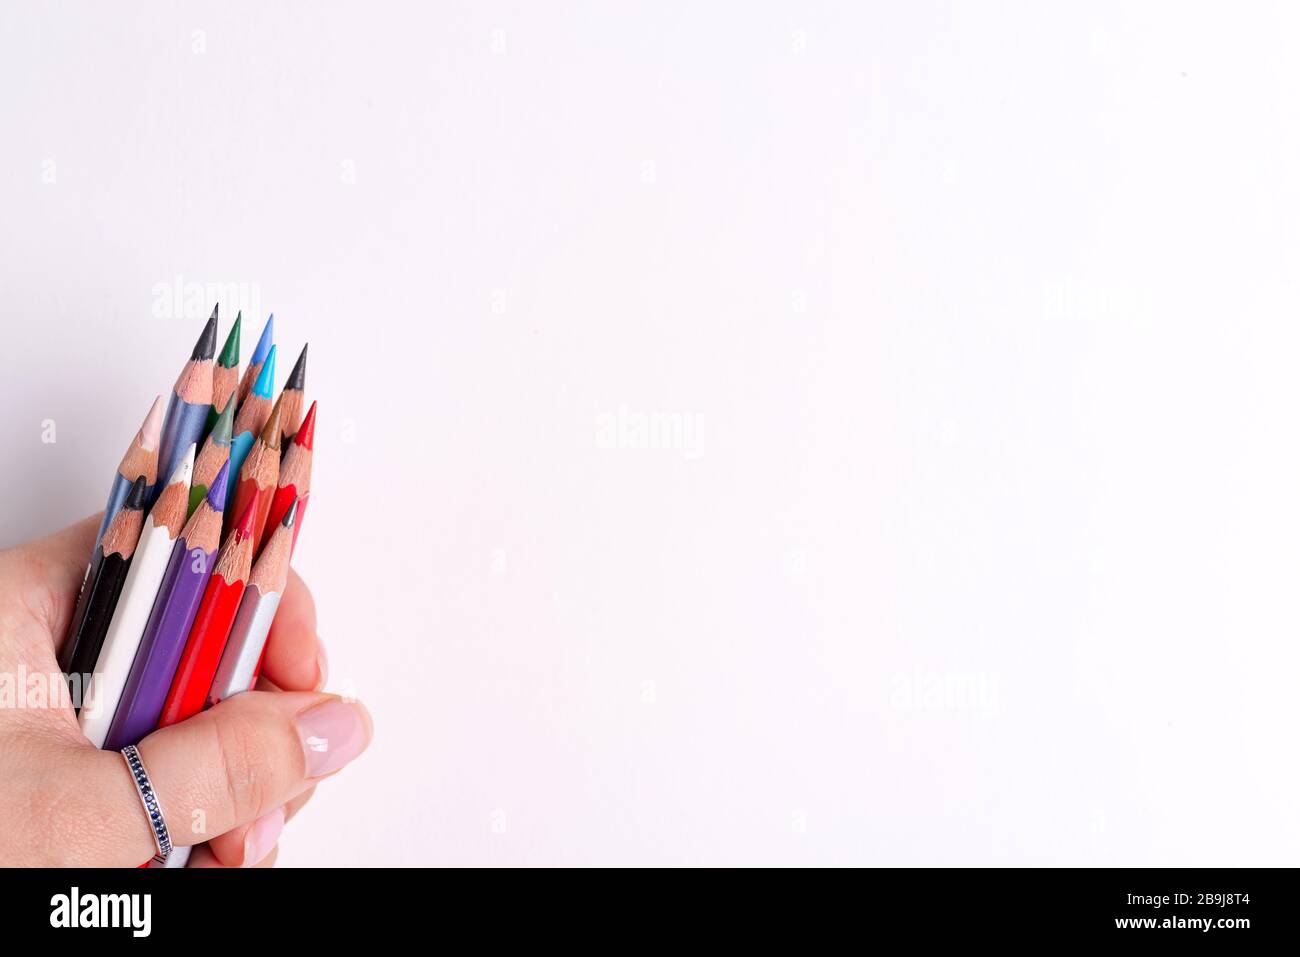 La main de la femme contient des crayons multicolores pour la créativité artistique sur un fond blanc avec espace de copie. Vue de dessus. Banque D'Images